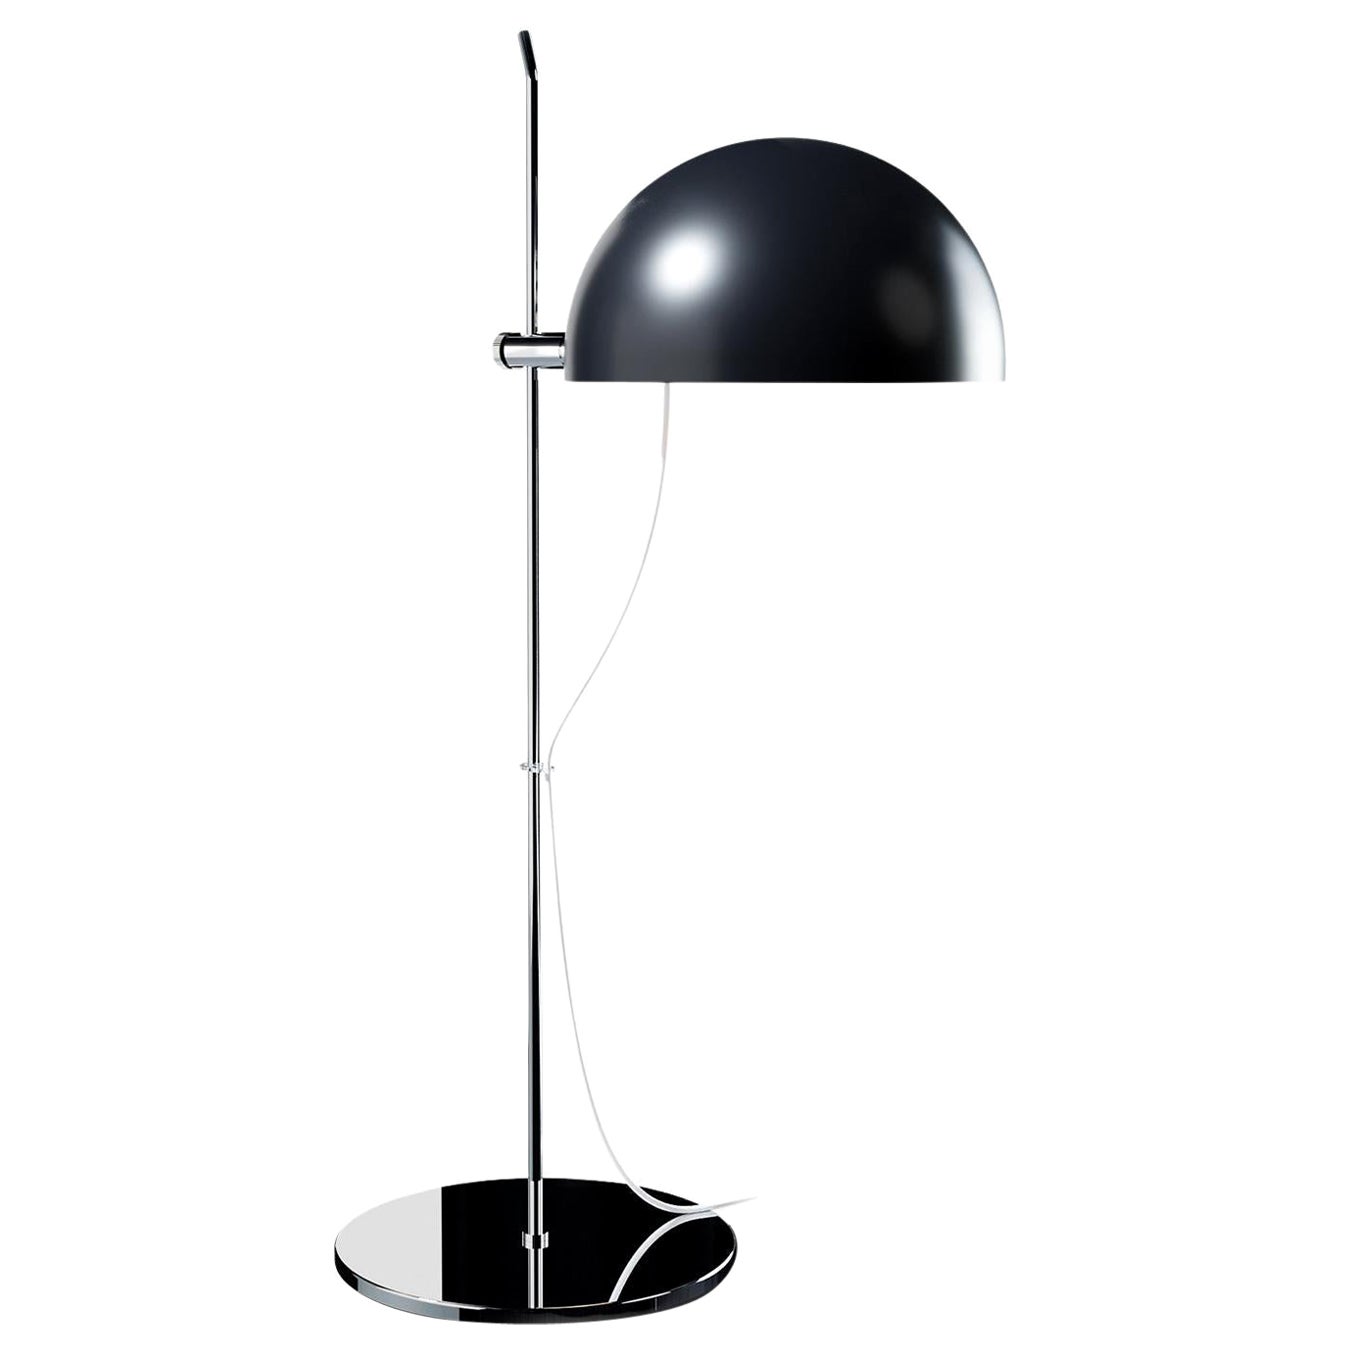 Alain Richard 'A21' Desk Lamp in Black for Disderot For Sale